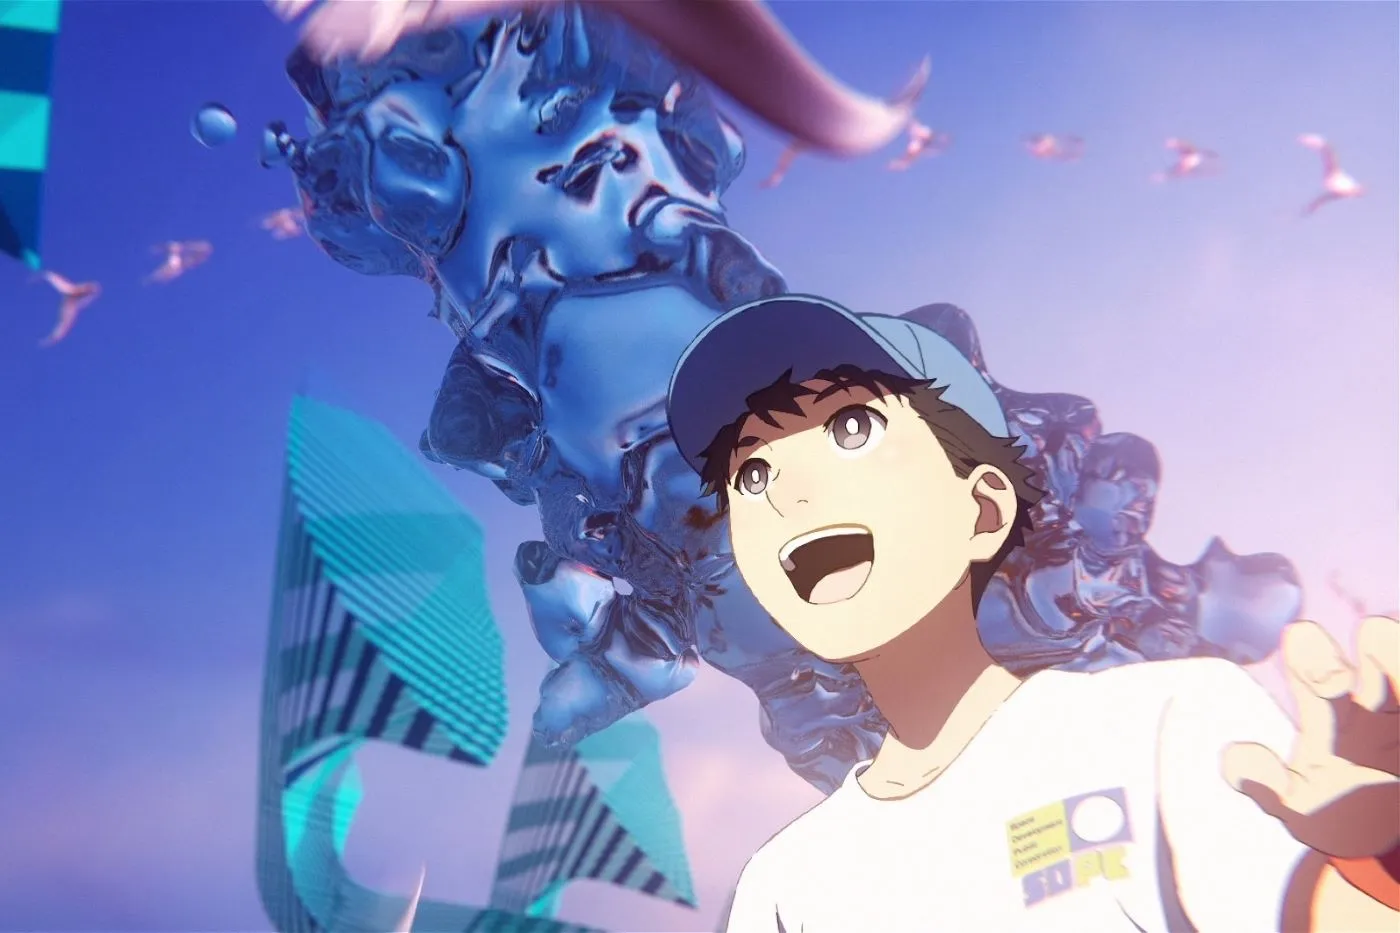 ein Junge mit blauer Cap und weißem T-Shirt reißt den Mund auf, hinter ihm baut sich eine riesige, wasserartige Masse auf